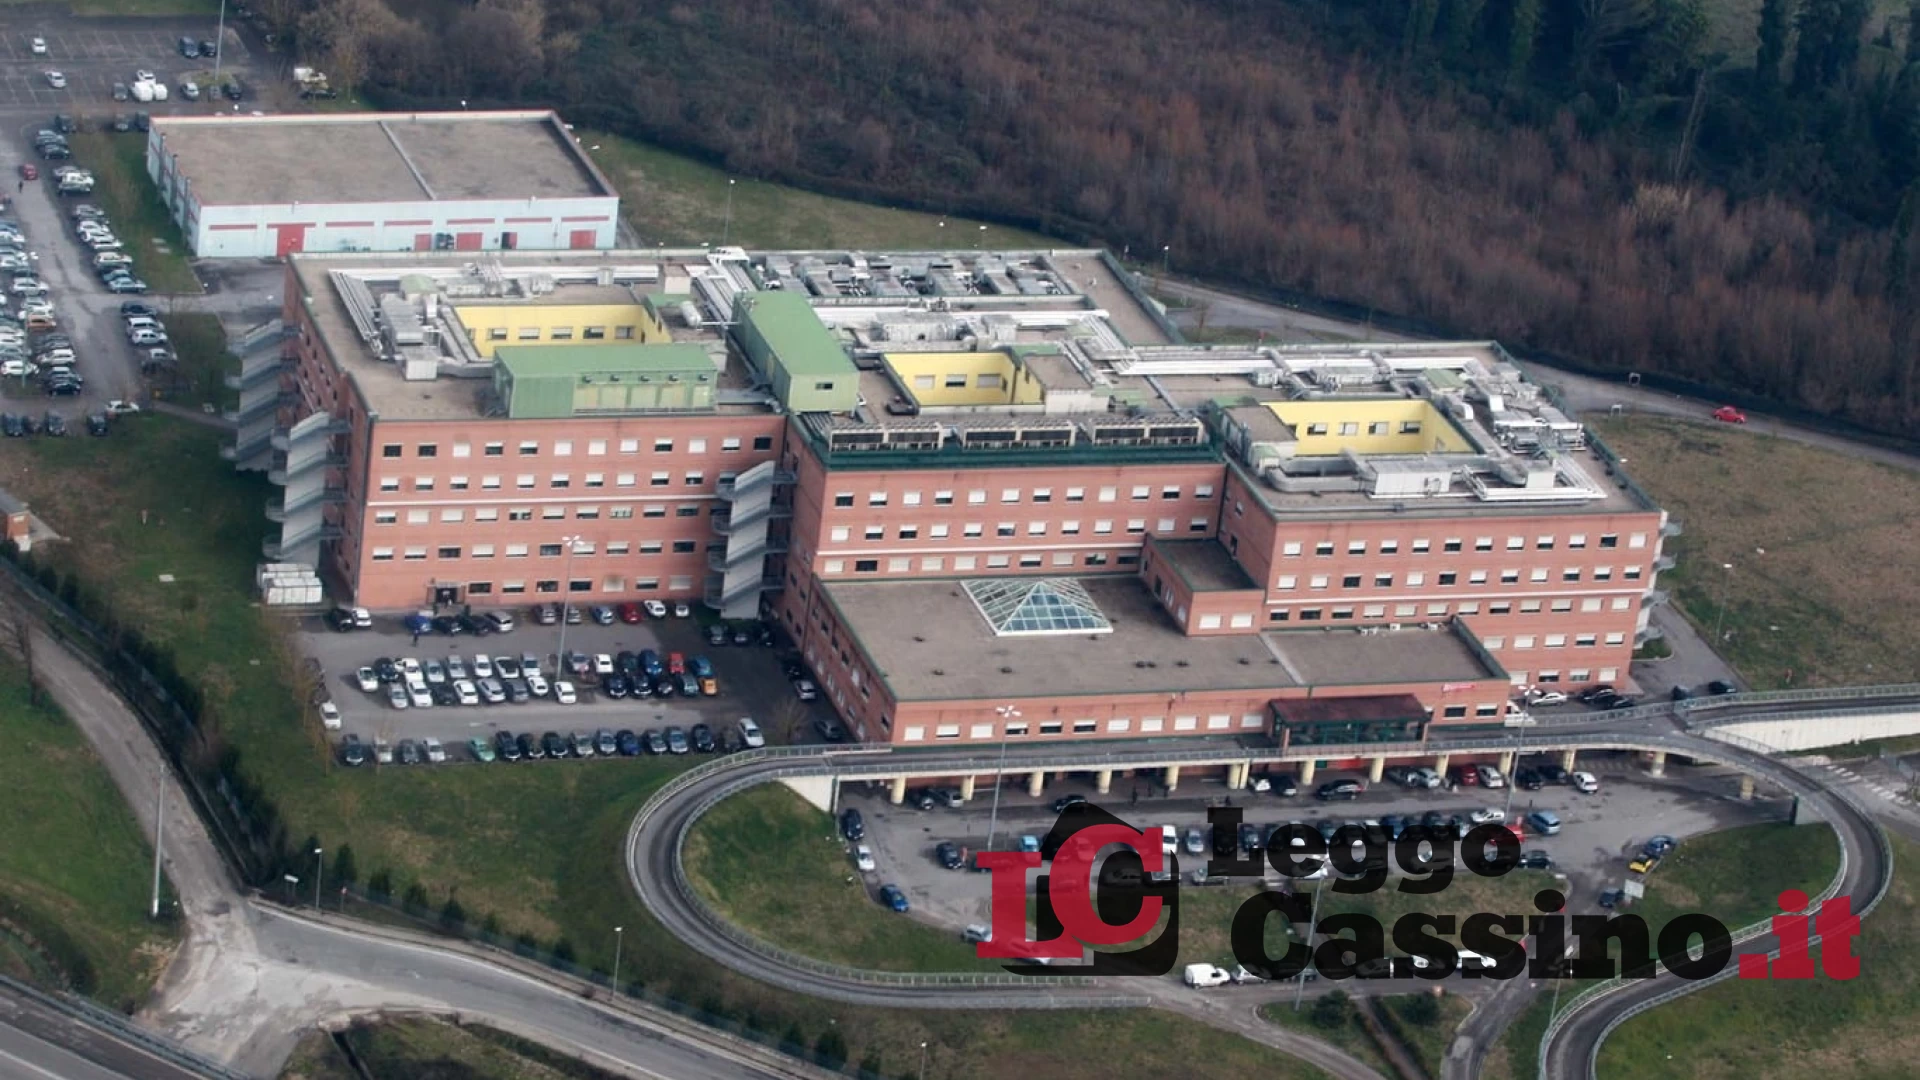 "Potenziare lo screening oncologico negli ospedali di Cassino e Anagni"